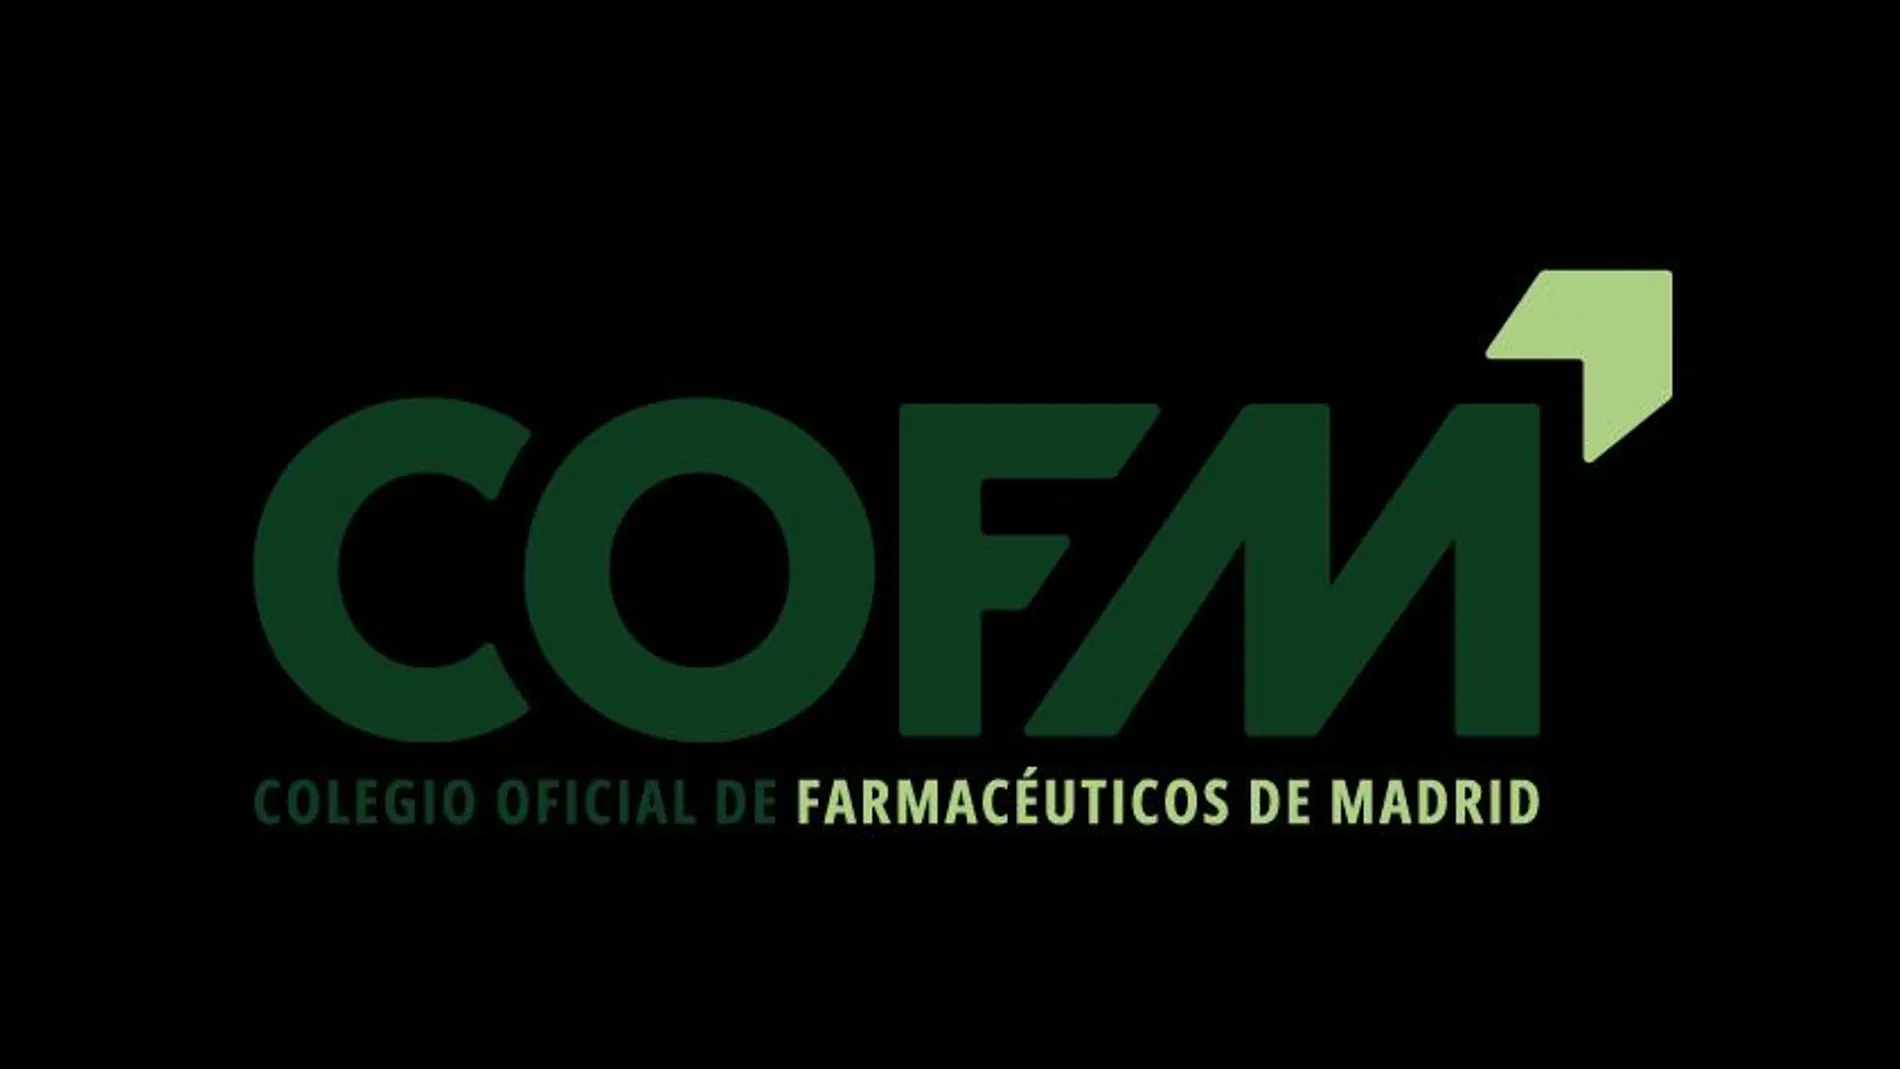 El Colegio Oficial de Farmacéuticos de Madrid estrena imagen corporativa en su 125º aniversario